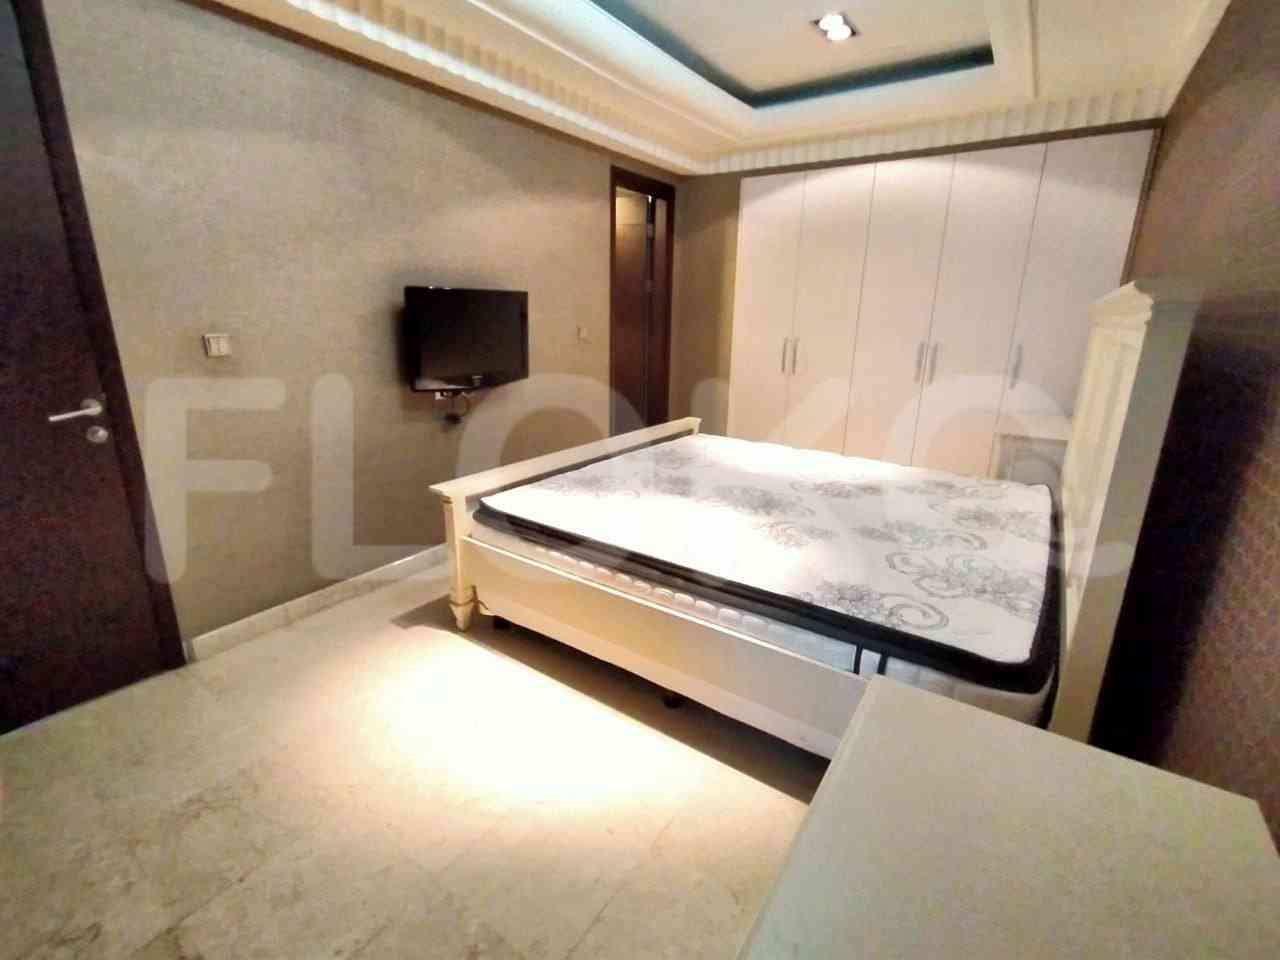 3 Bedroom on 16th Floor for Rent in Pavilion - fsc19d 6